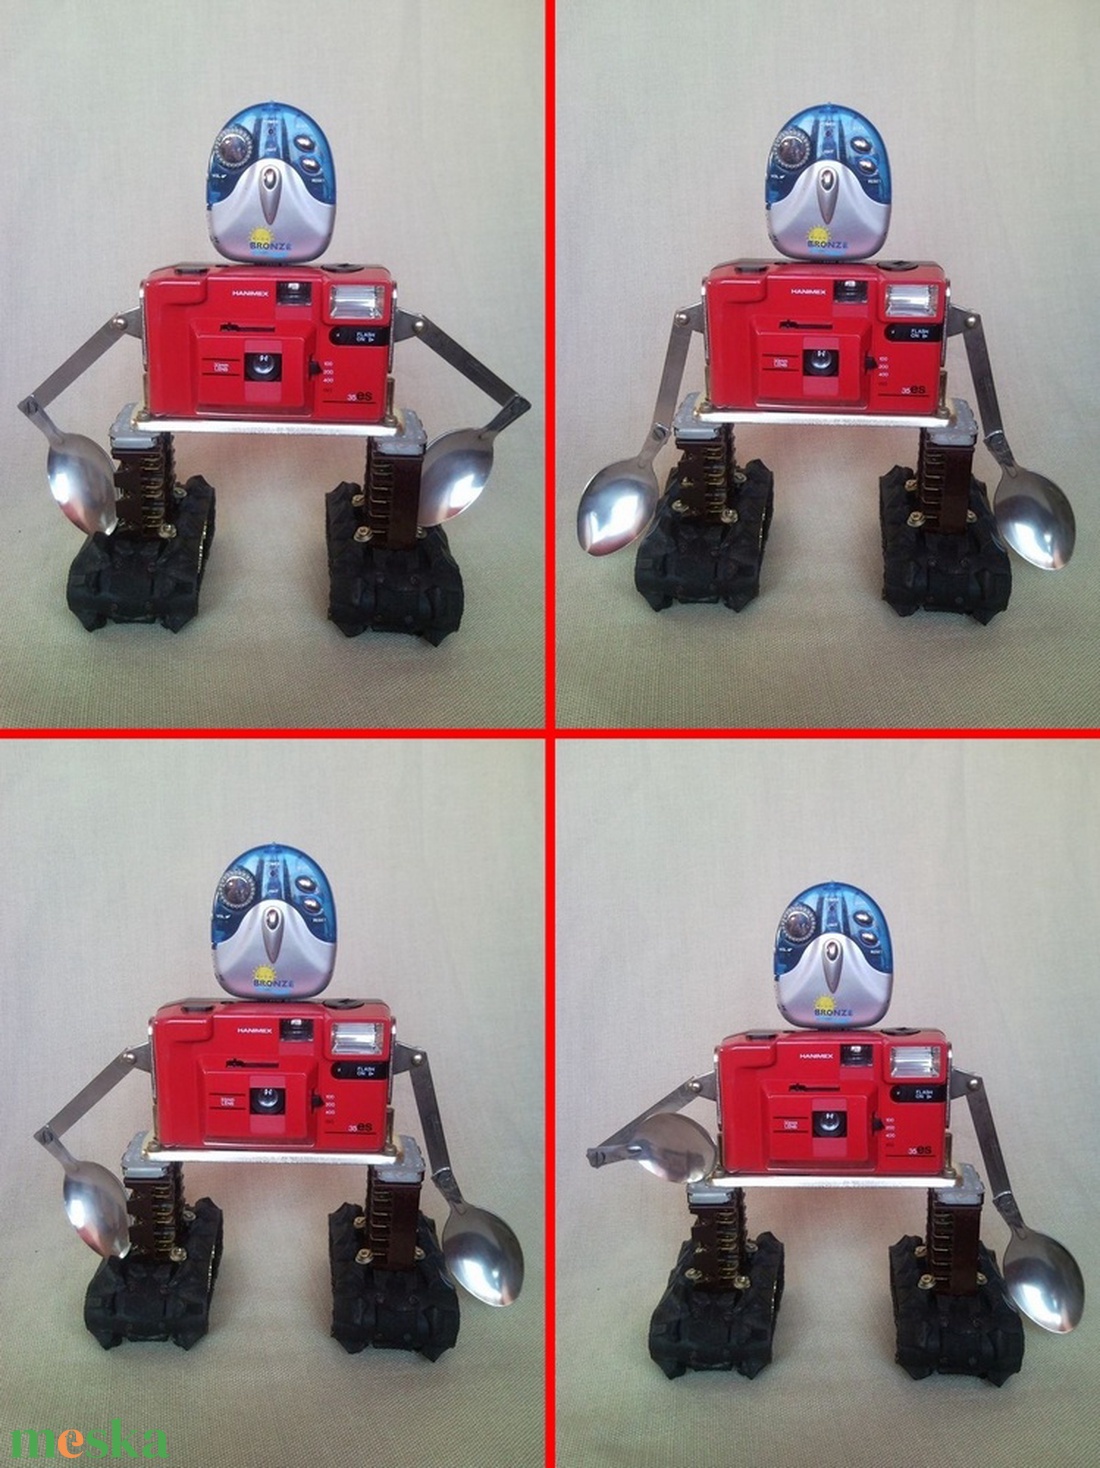 Piros retro fényképezőgép robot mozgatható karokkal  újrahasznosított tárgyakból fotósoknak férfiaknak - otthon & lakás - dekoráció - dísztárgy - Meska.hu